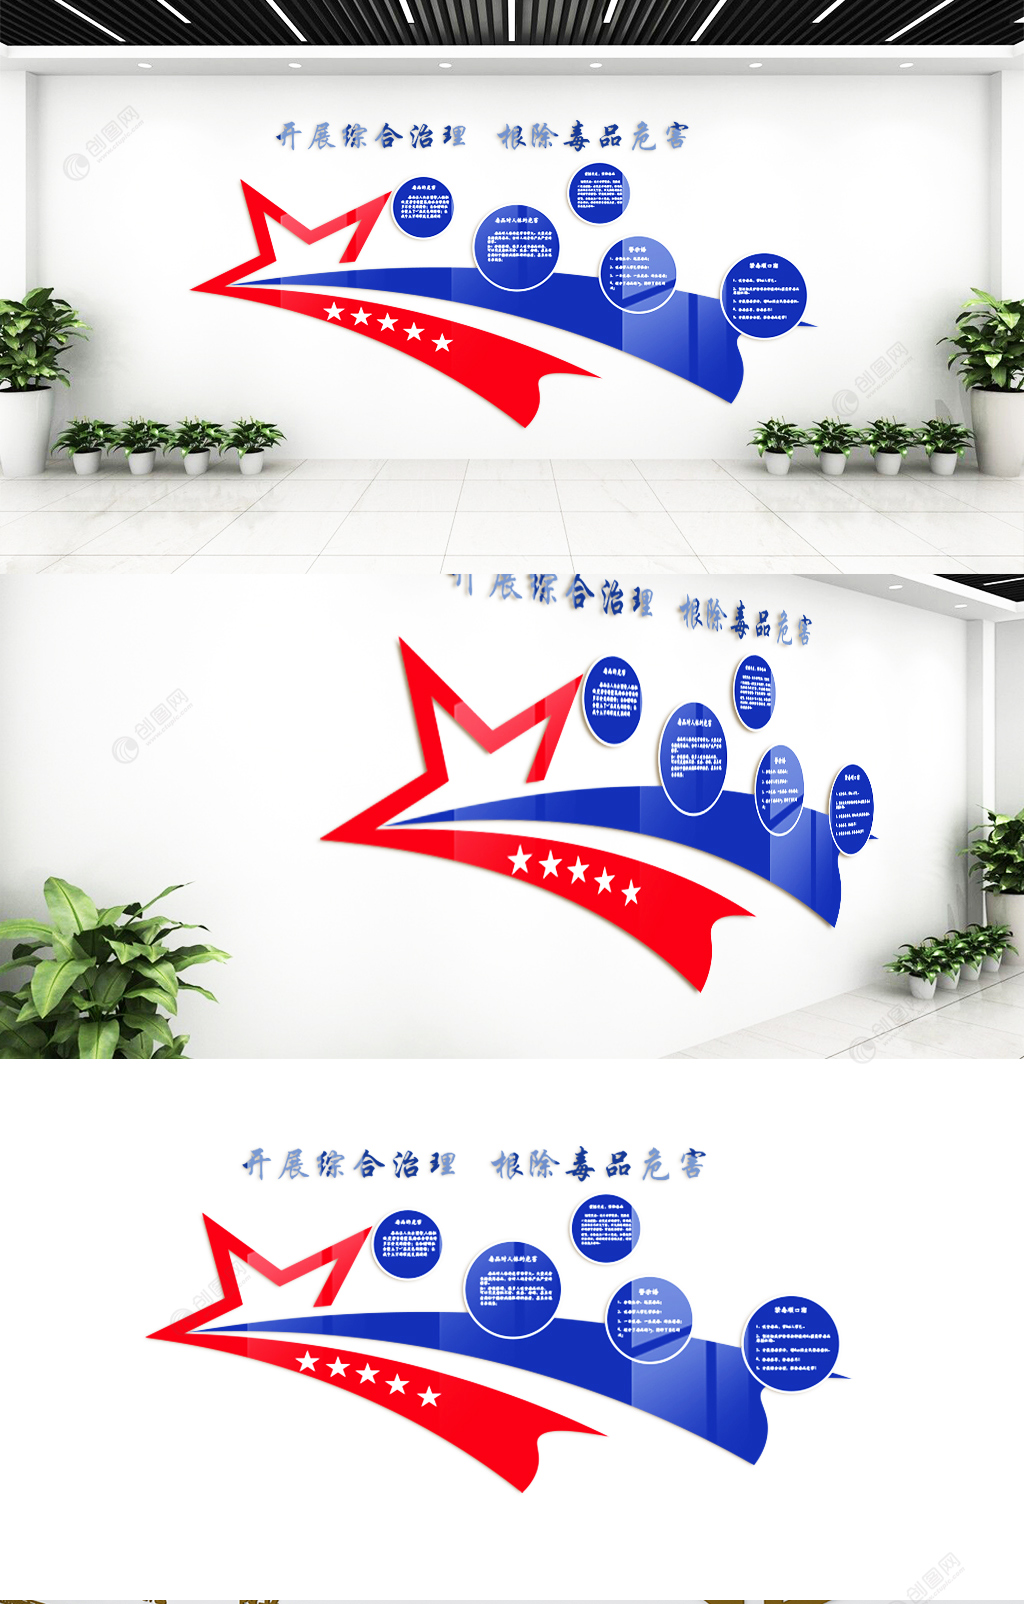 蓝色禁毒戒毒宣传文化墙设计效果图